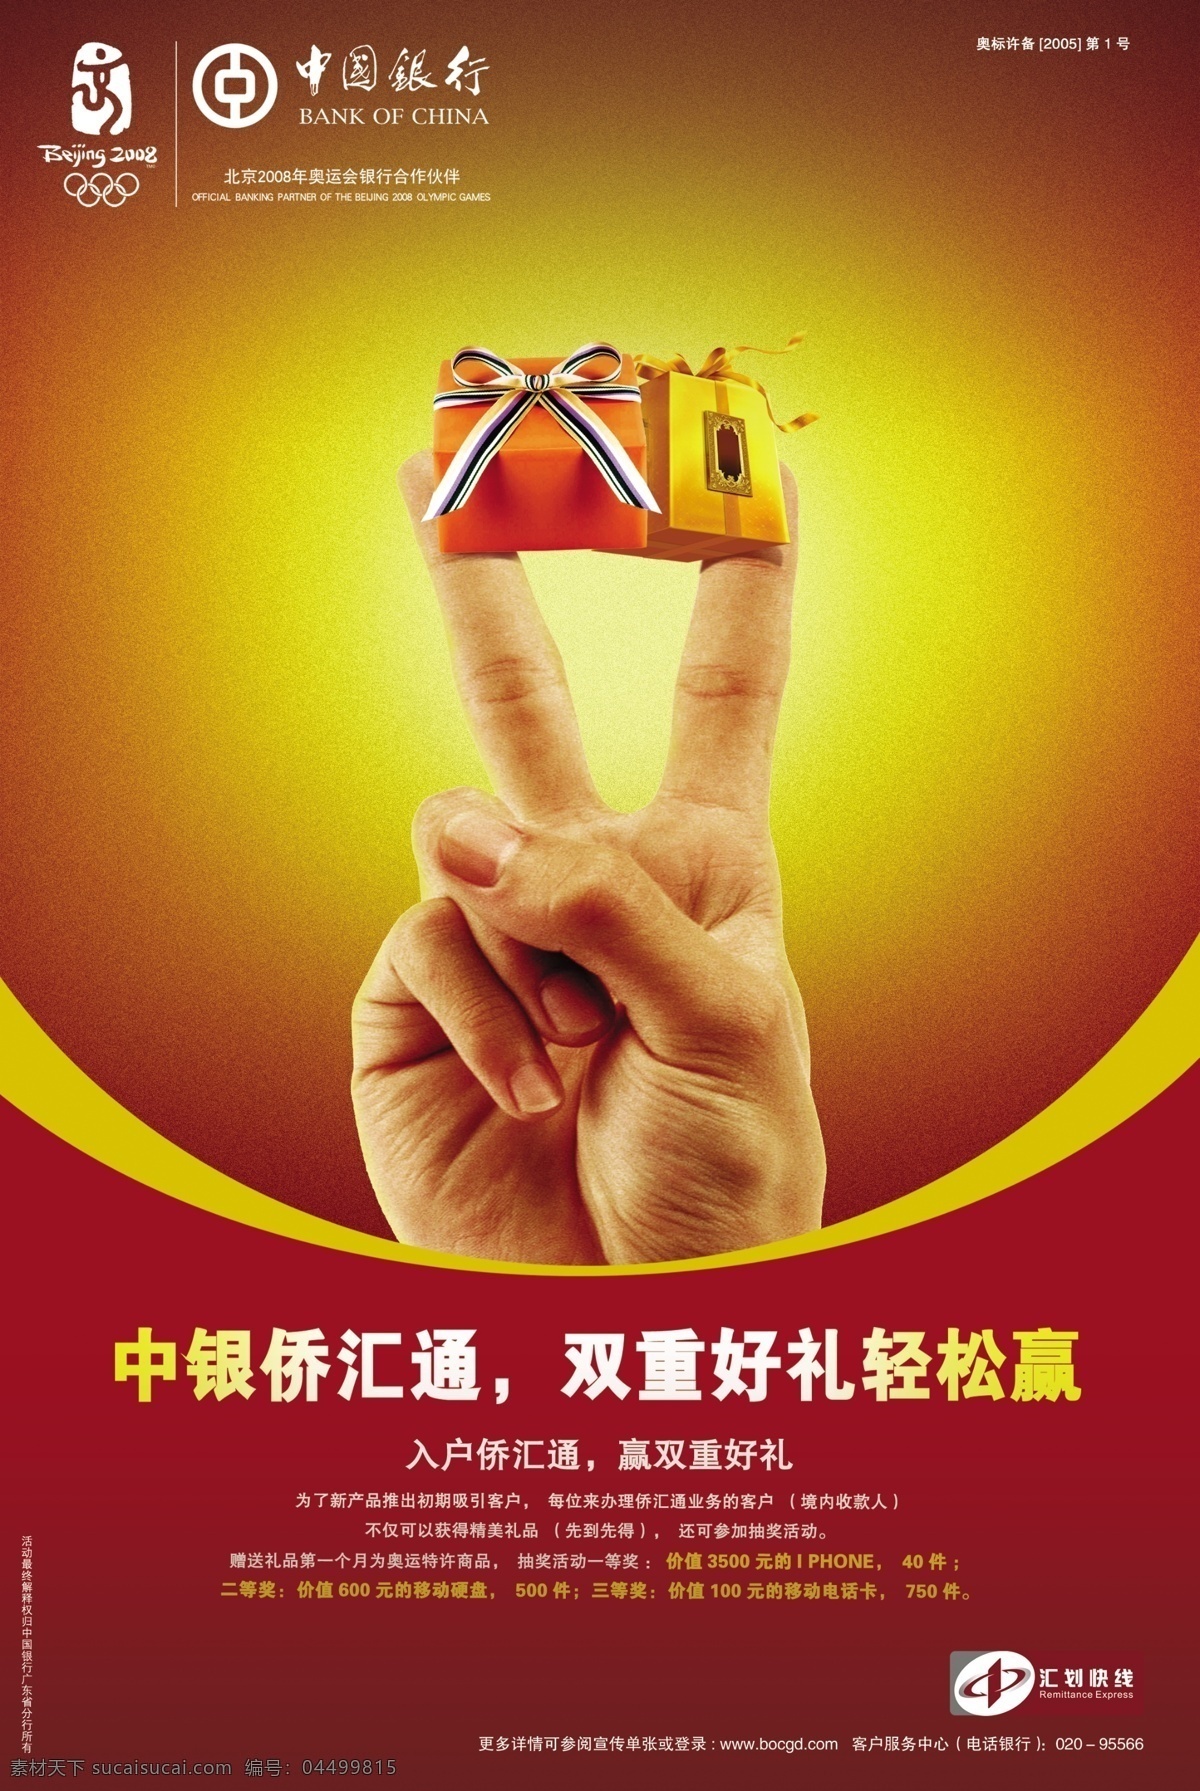 中国银行 中国银行展板 中国银行广告 logo 写真 展板 展板模板 广告设计模板 源文件